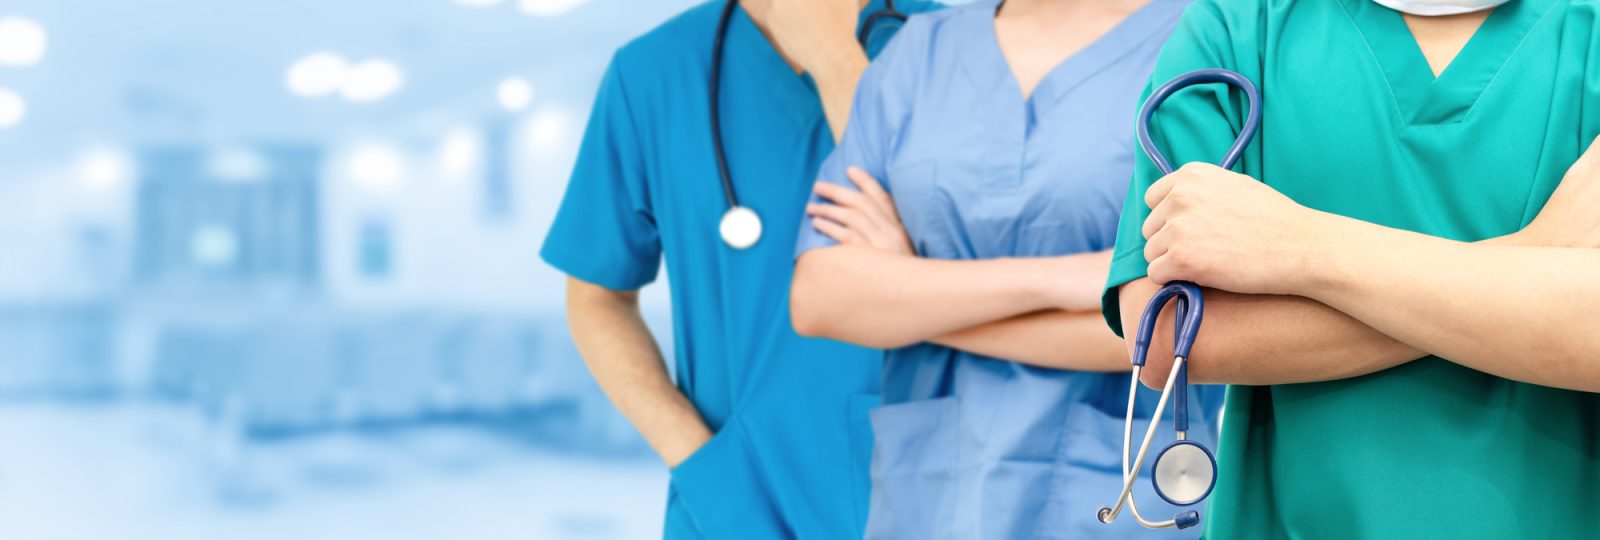 Infirmières : le CIUSSS poursuit son plan, les inquiétudes persistent